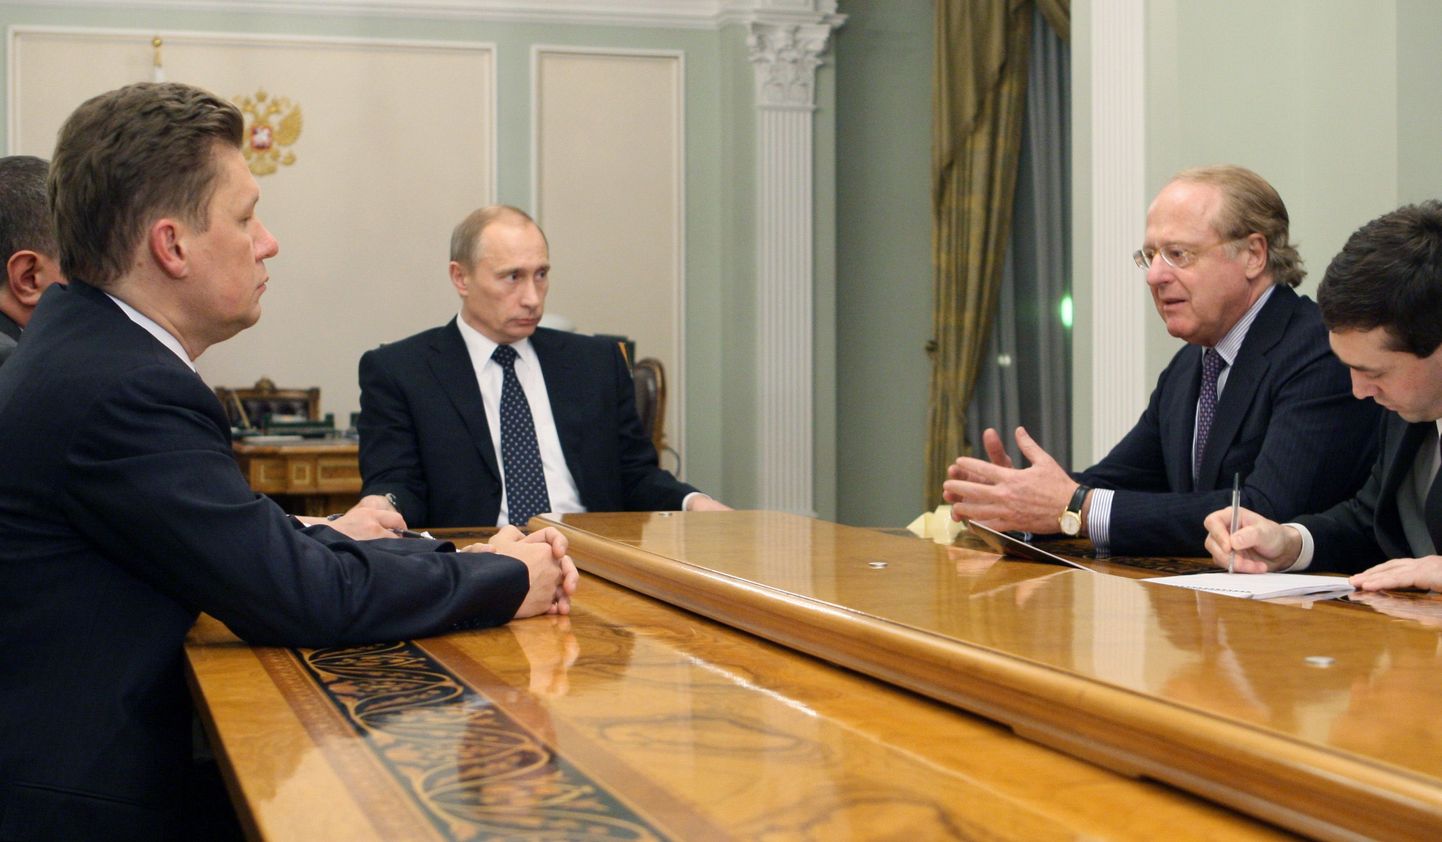 Venemaa peaminister Vladimir Putin (keskel) kohtumas Itaalia energiagigandi Eni SpA tegevjuhi Paolo Scaroniga (paremalt teine) oma residentsis Novo-Ogarjovos, kuhu tuli kohale ka Gazpromi juhatuse esimees Aleksei Miller (vasakul).